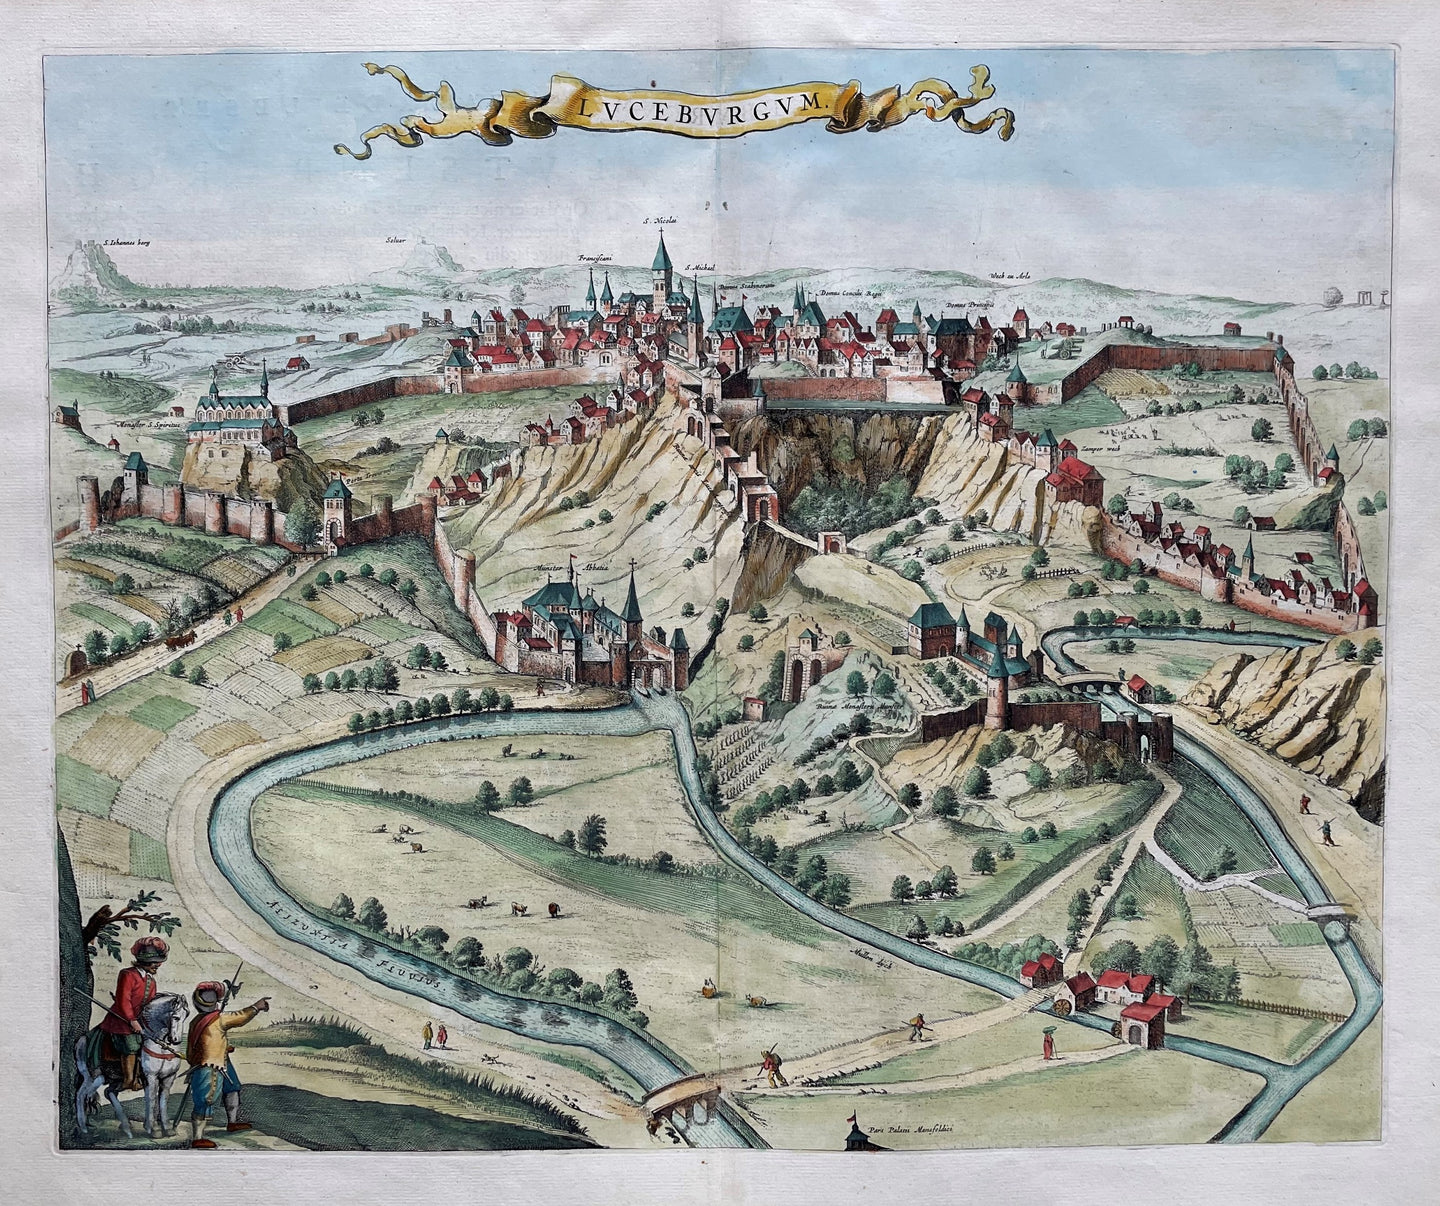 Luxemburg Aanzicht van de stad in vogelvluchtperspectief - J Blaeu - 1649